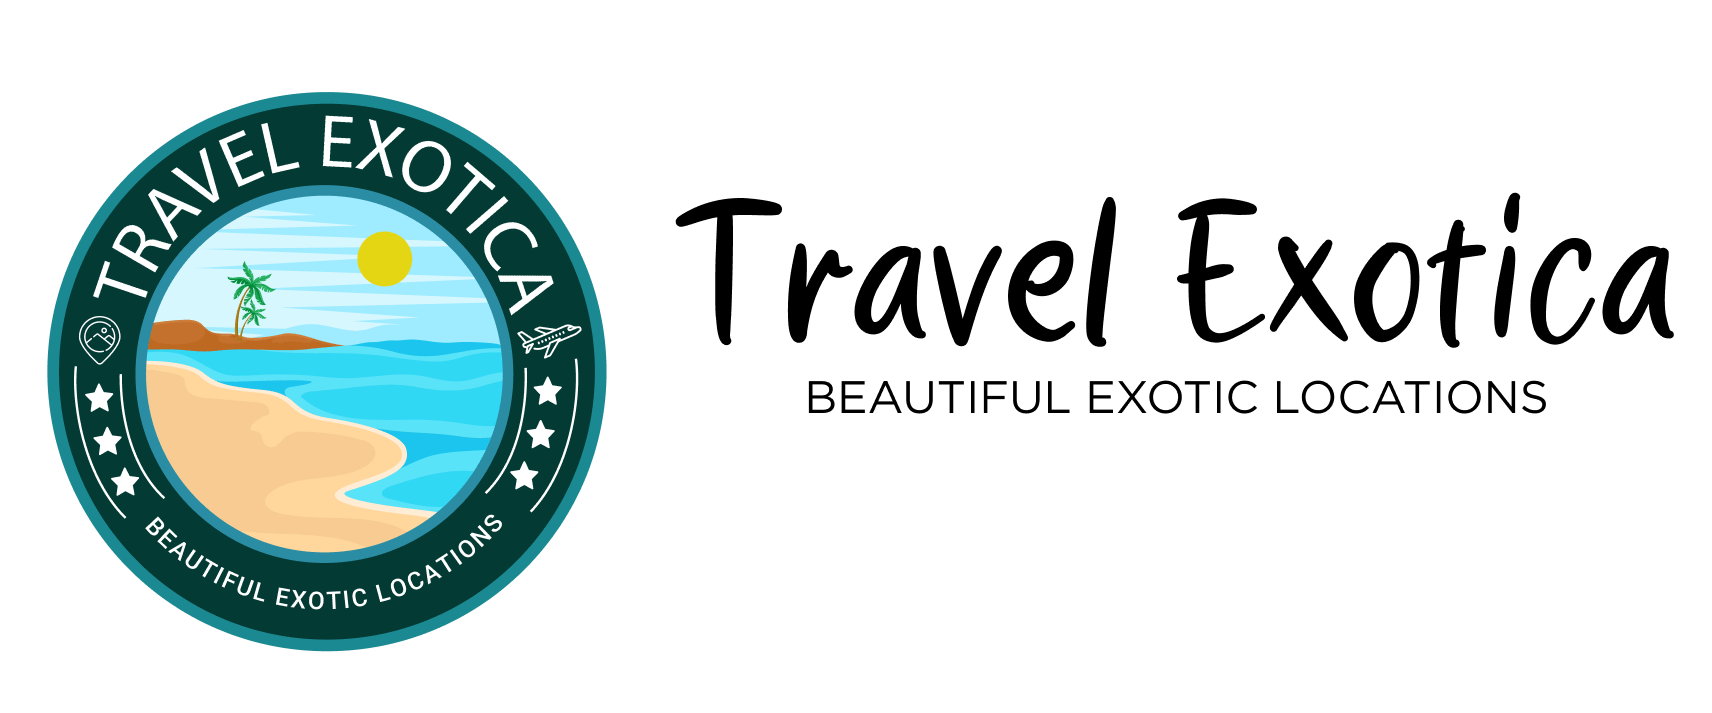 Exoticca_Travel